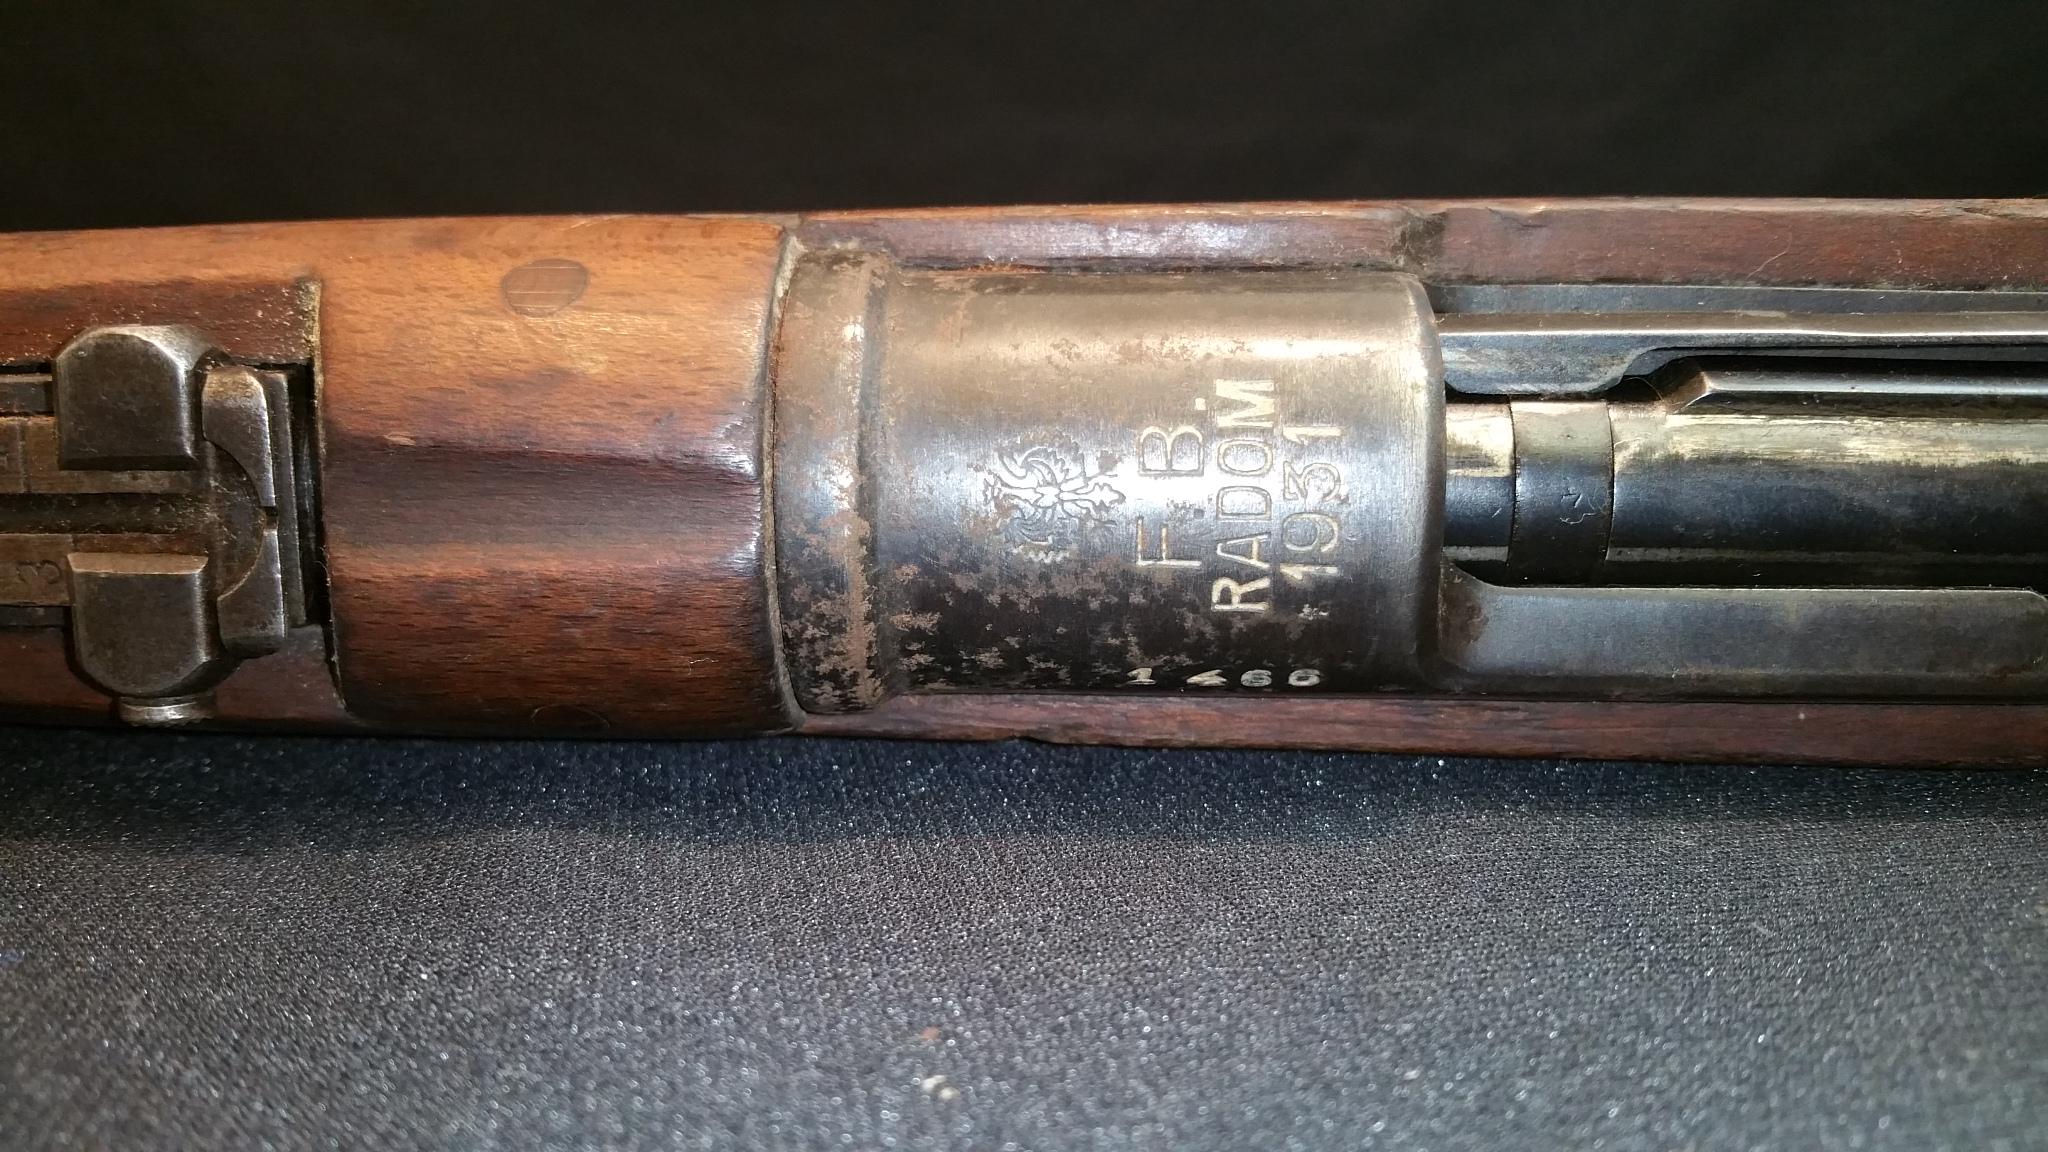 F.B. Radom 1931 Model WZ 29bolt action rifle 8mm cal. S/N: 1466